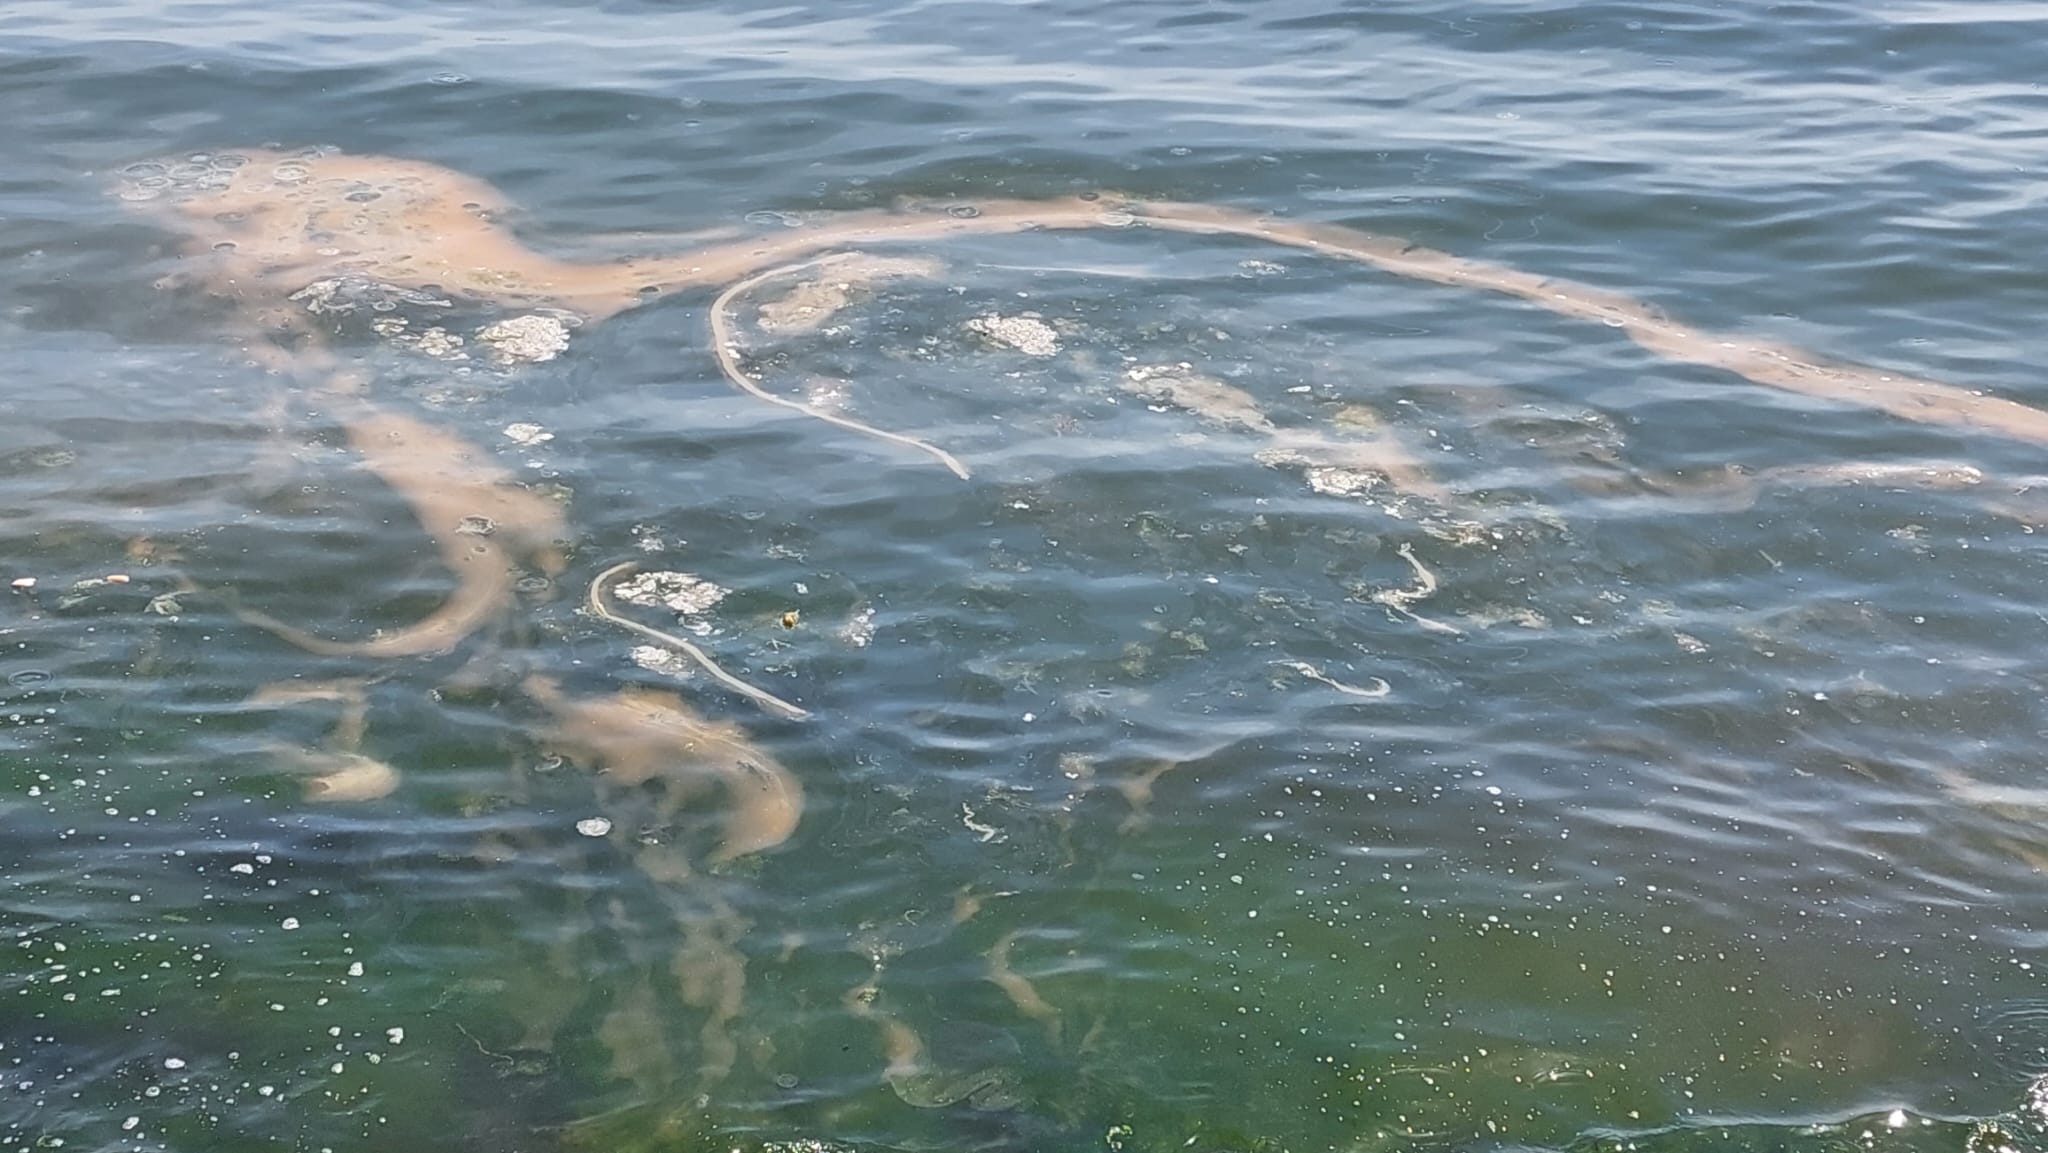 Her yıl bu mevsimlerde plankton çoğalması sonucu turuncu tonlara bürünen Marmara Denizi'nin Tekirdağ kıyıları yine aynı renge büründü. Turuncu tonların yanı sıra kıyılarda beyaz denizanalarının da çoğaldığı gözlendi.